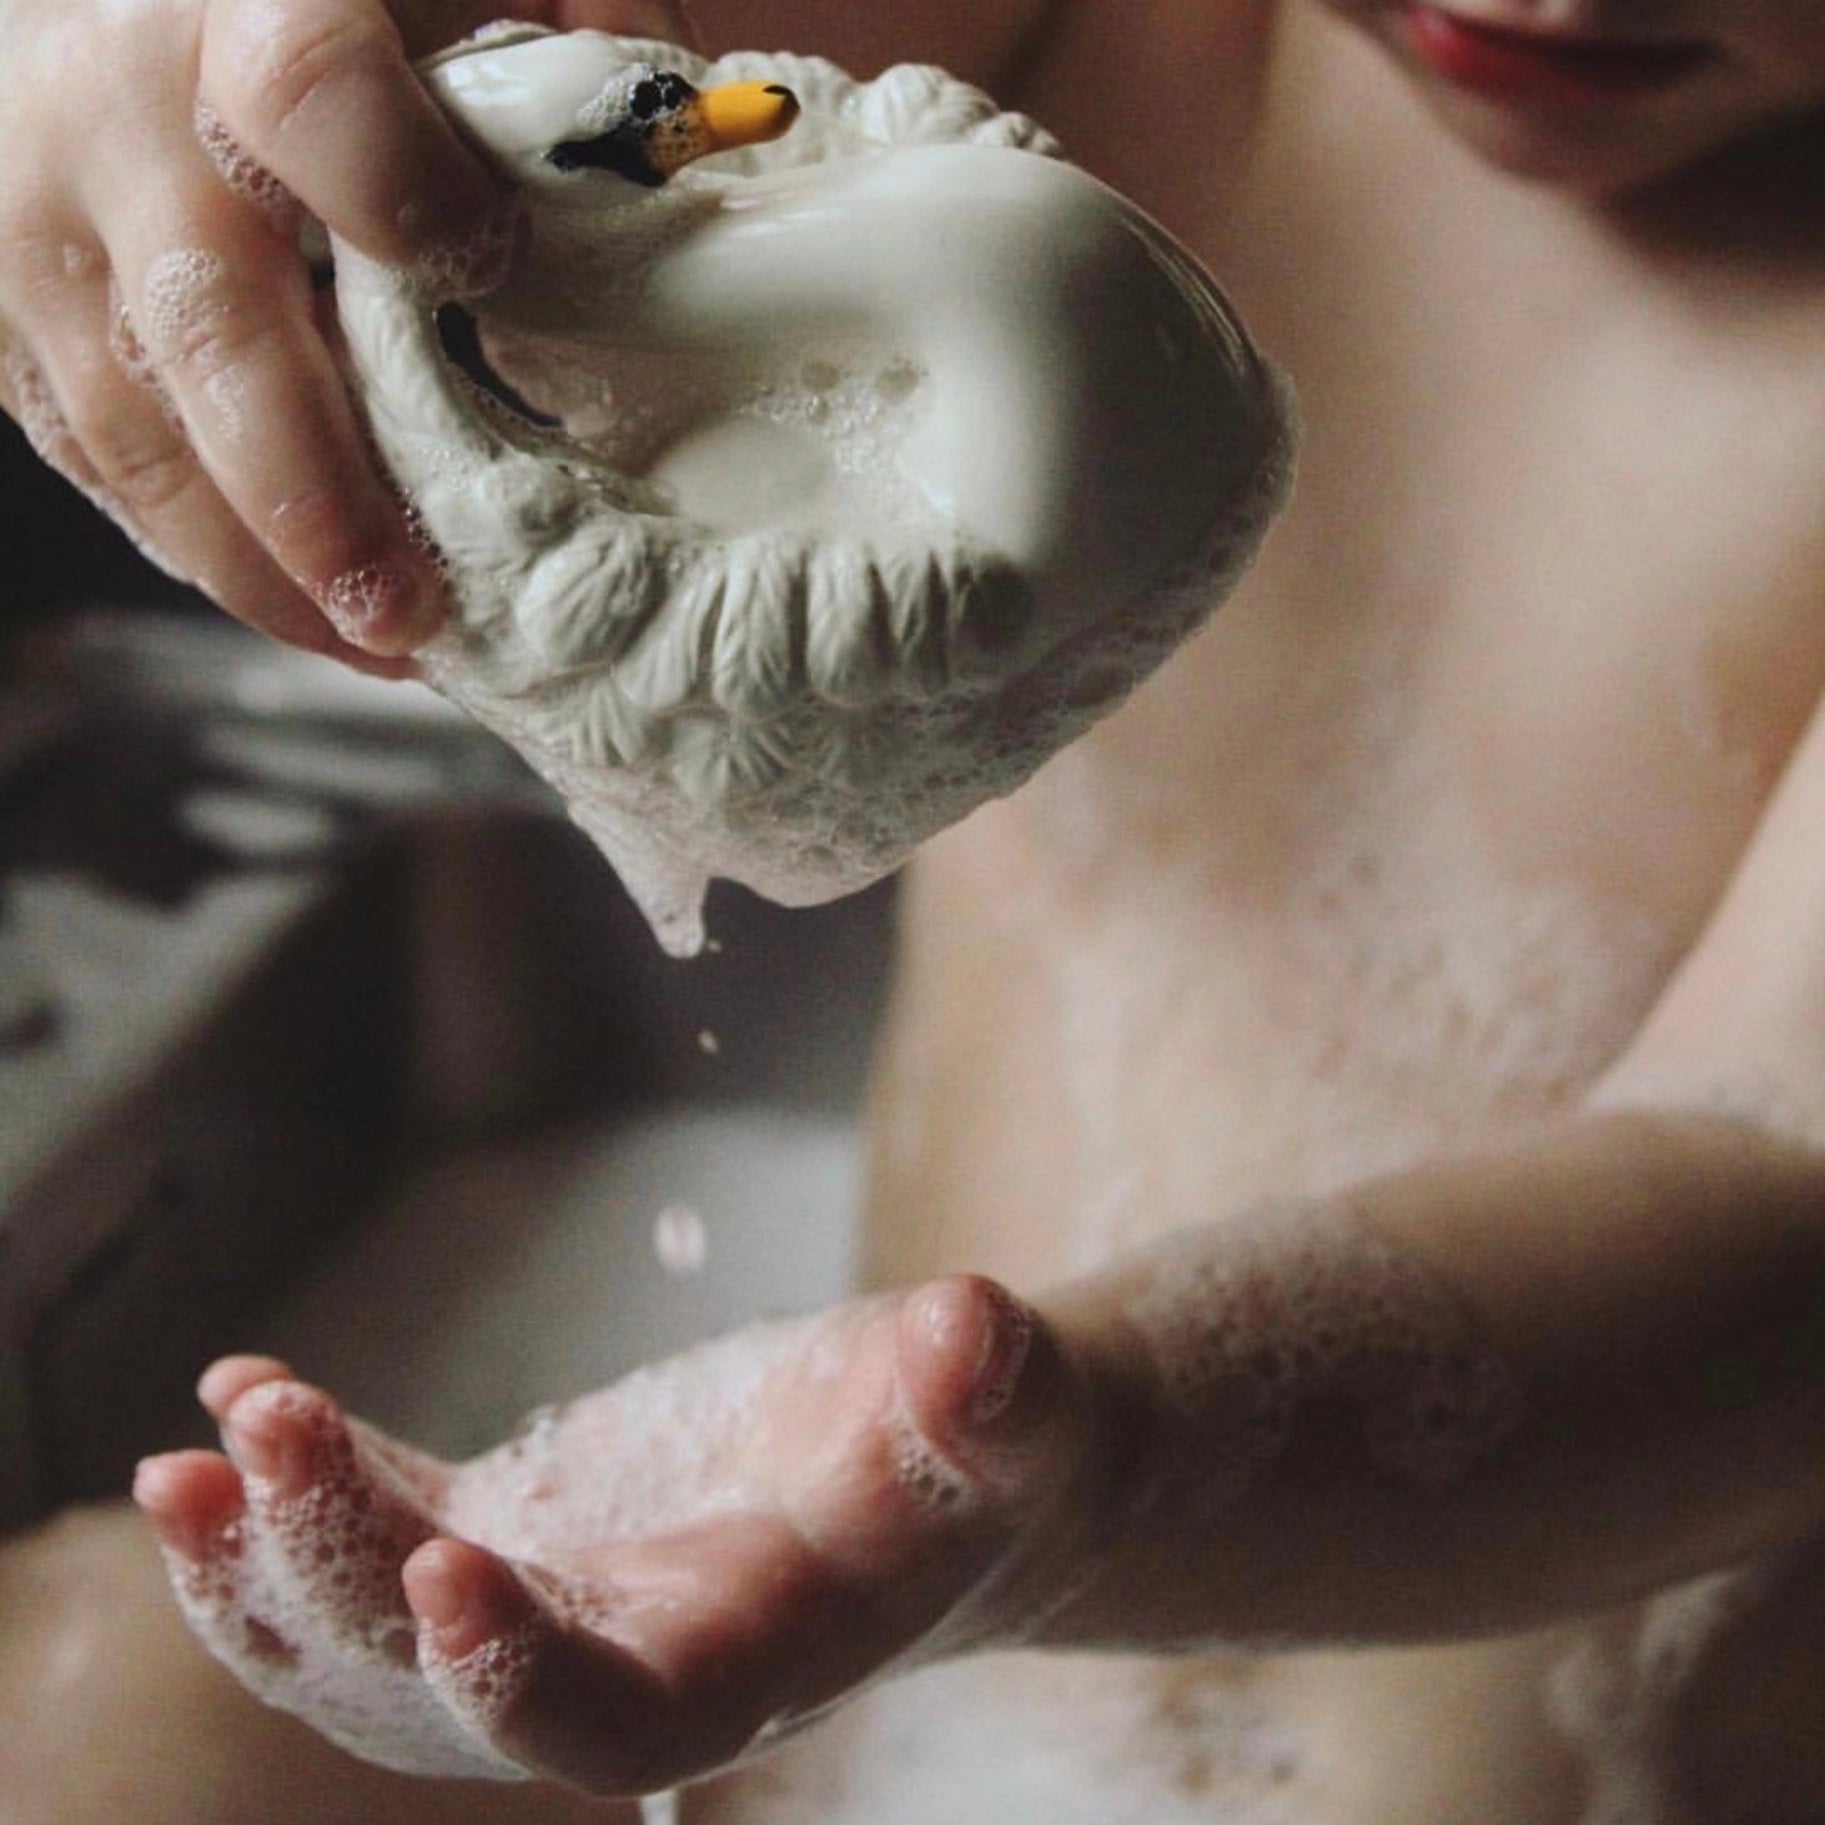 Natruba White Swan Bath Toy - ANB Baby -$20 - $50